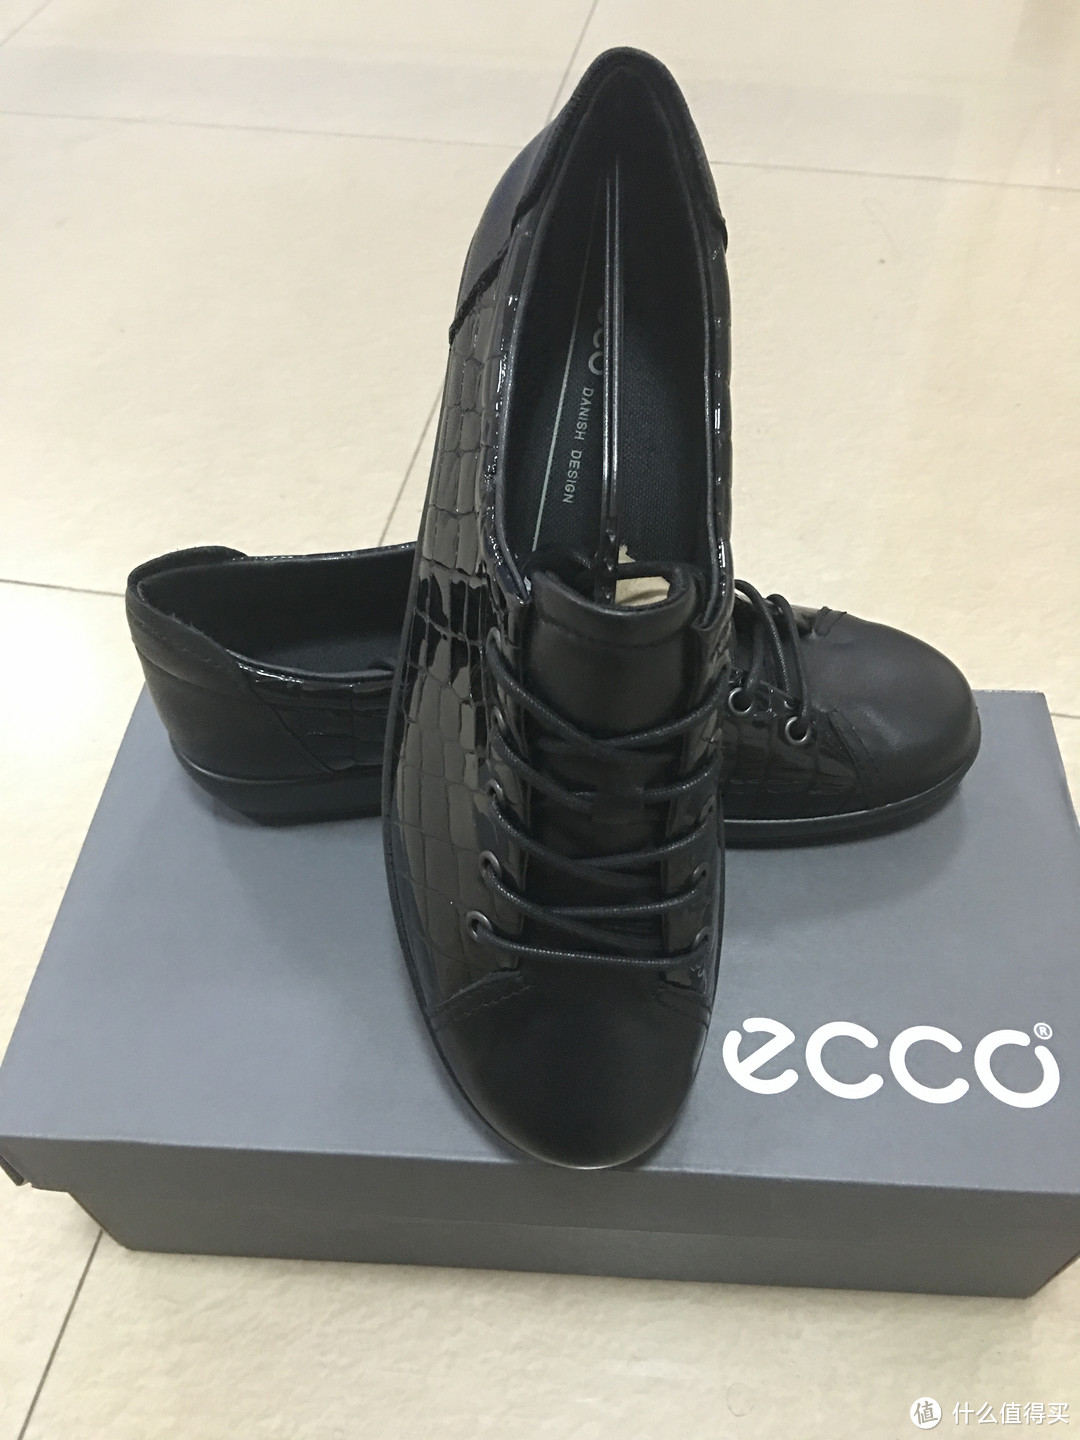 #有货自远方来#感受来自文艺复兴的意亚：ECCO爱步 女鞋后买的先到！